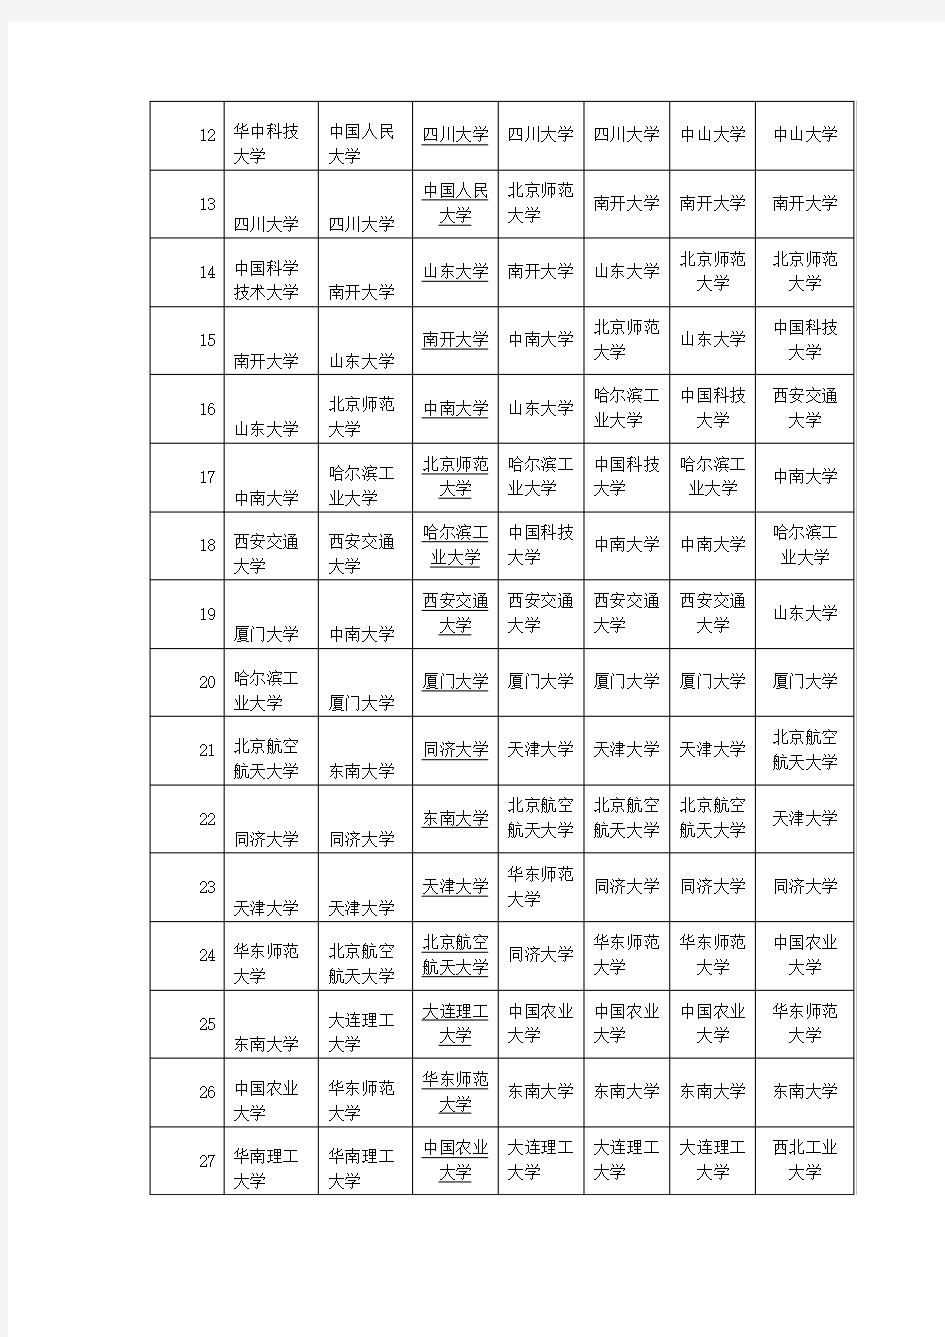 中国大学历年排行榜100强(2008年—2014年)1